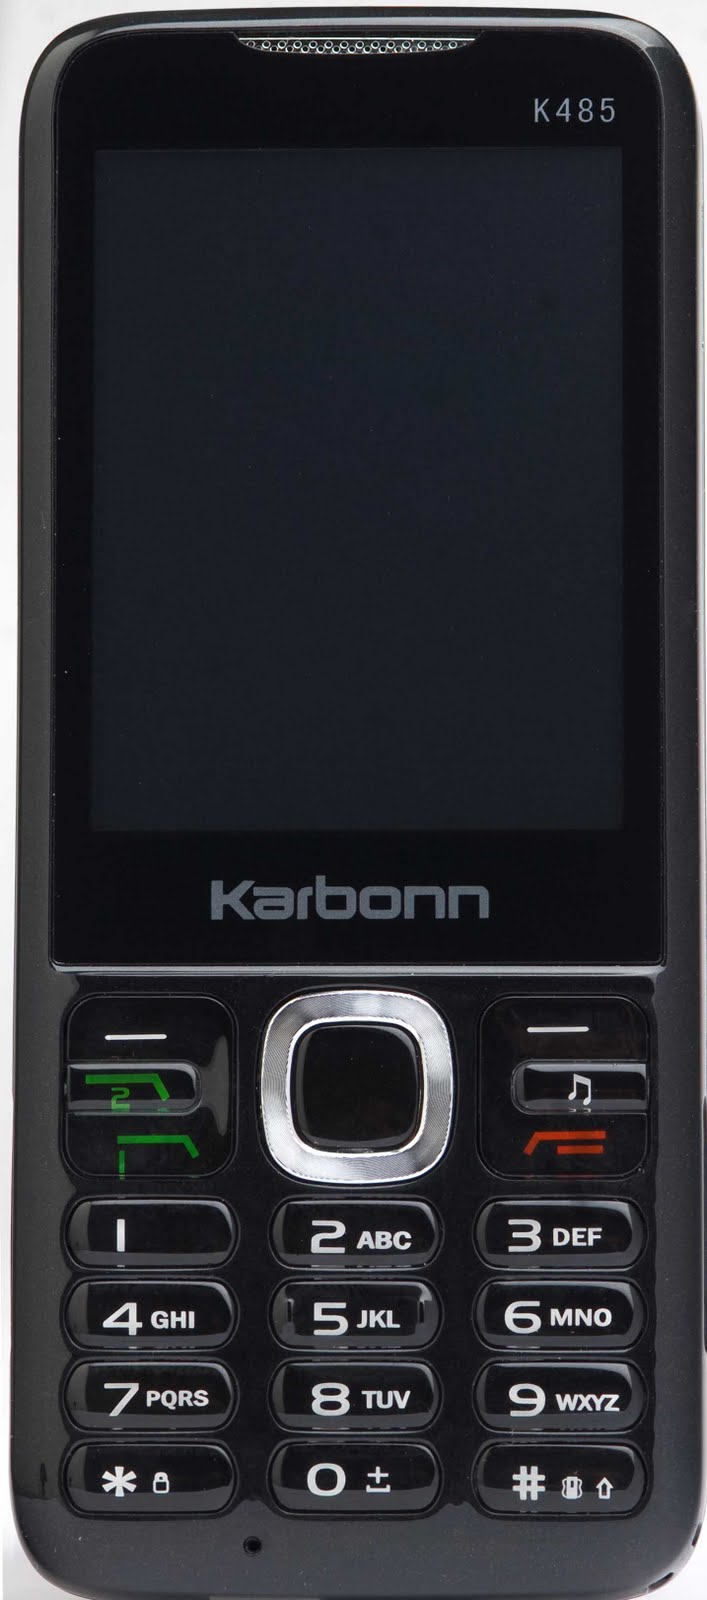 fondo de pantalla de karbonn,teléfono móvil,artilugio,característica del teléfono,dispositivo de comunicaciones portátil,dispositivo de comunicación